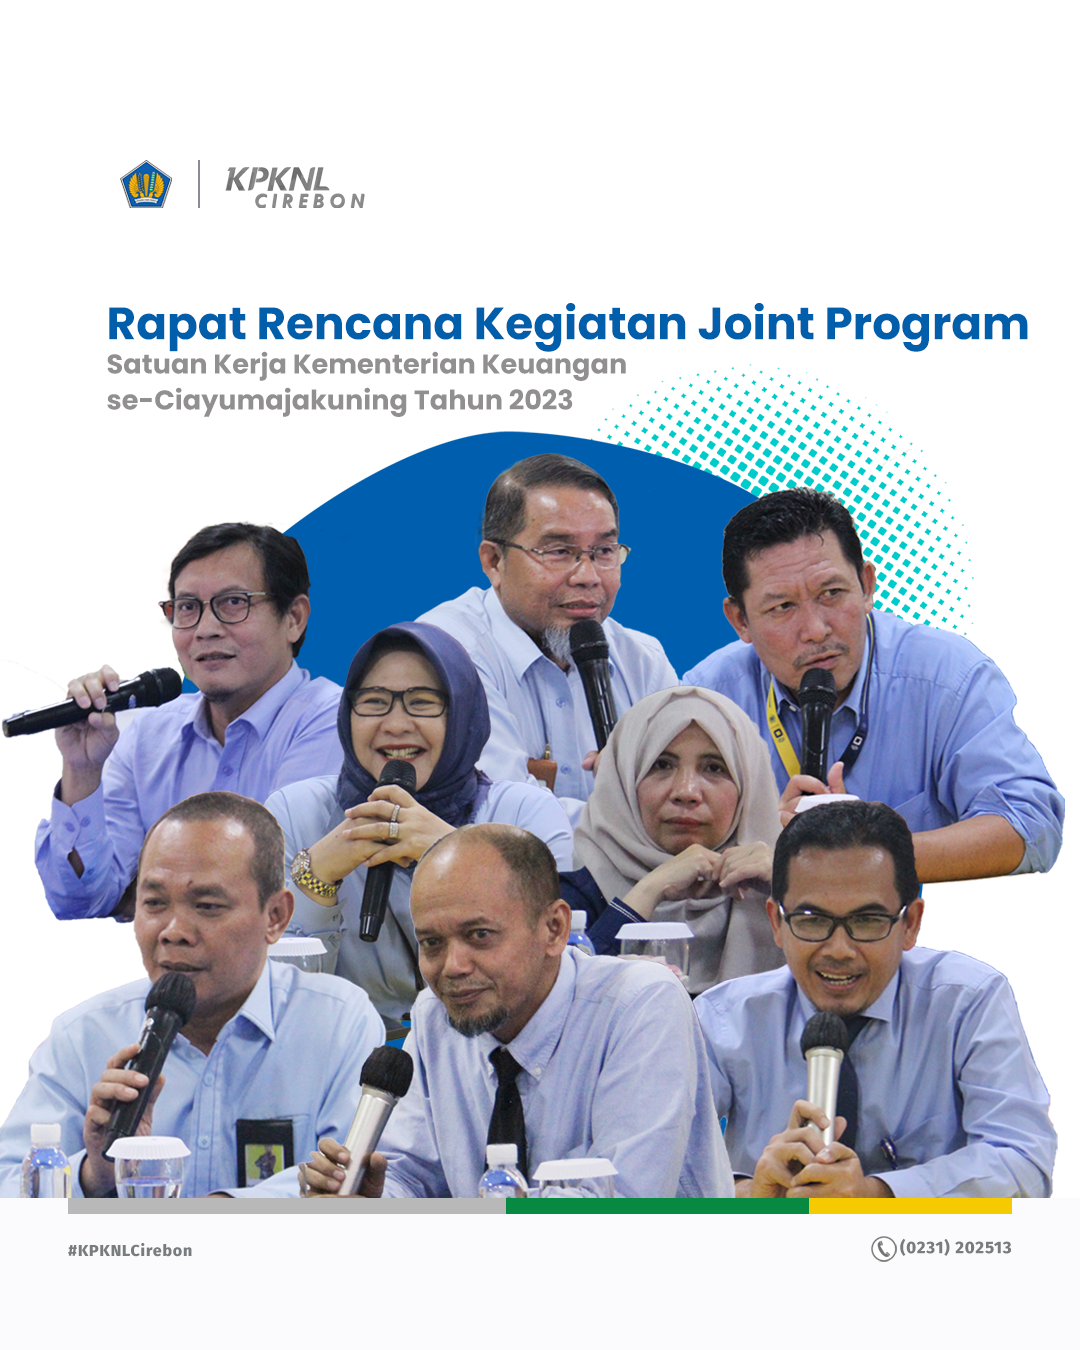 Rapat Pembahasan Rencana Kegiatan Joint Program Satuan Kerja Kementerian Keuangan se-Ciayumajakuning Tahun 2023